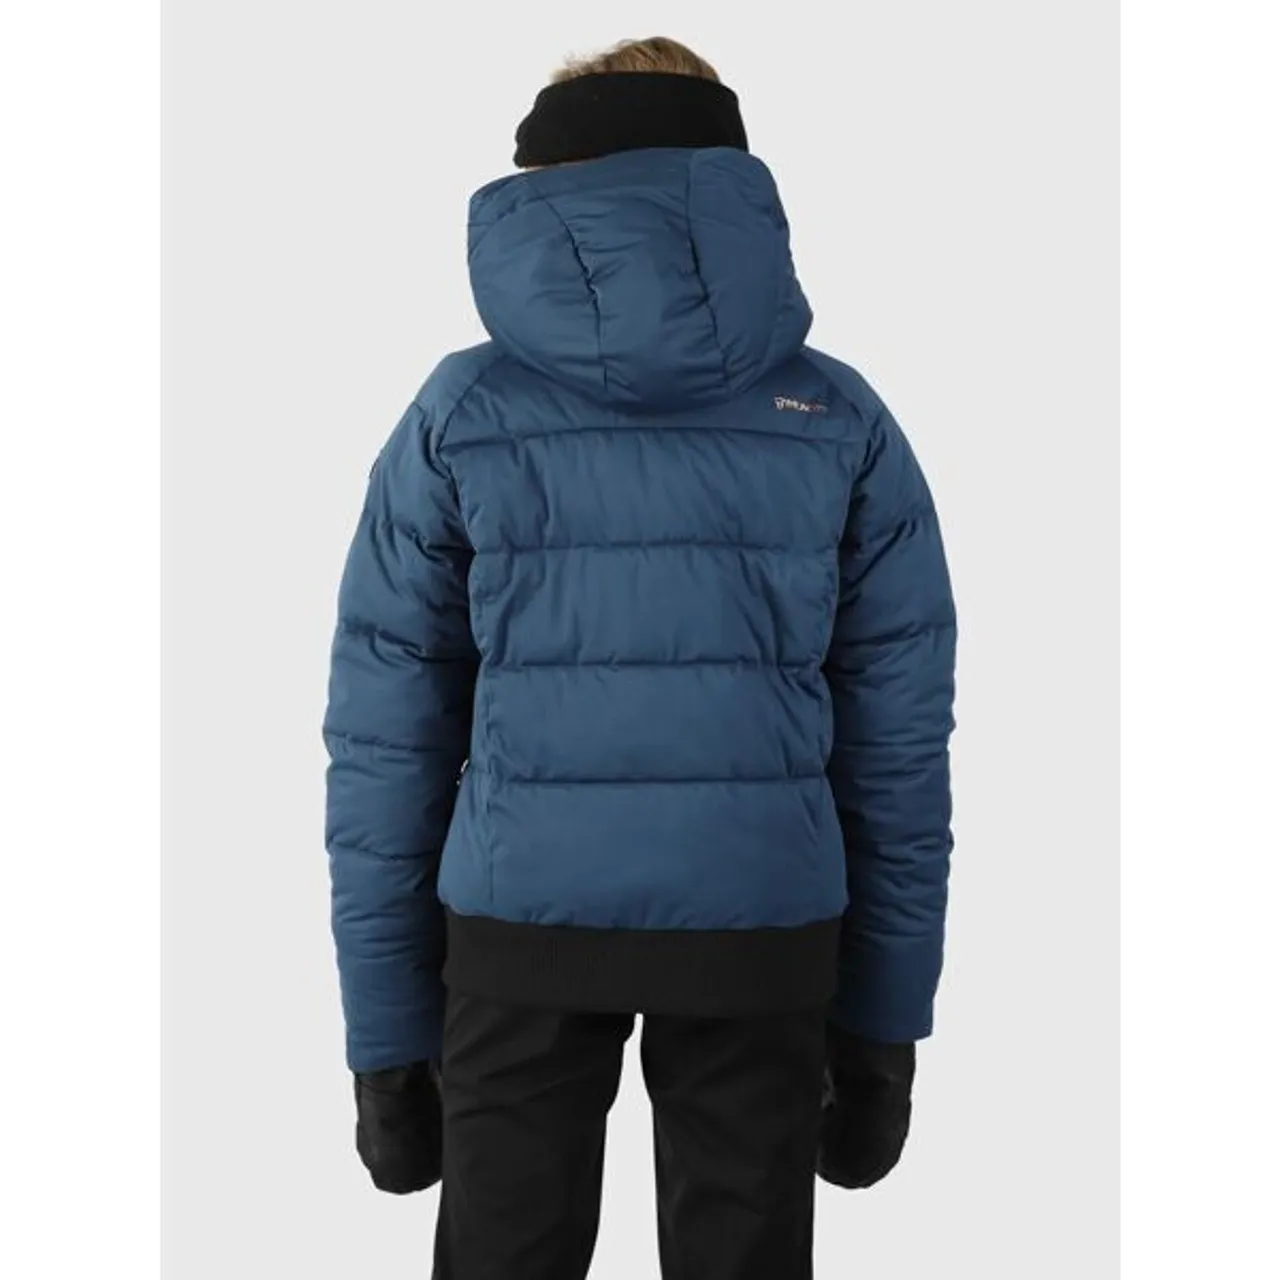 Schneejacke BRUNOTTI "Suncrown Girls Snow Jacket - für Kinder" Gr. 152, blau (night blue) Kinder Jacken Schneeanzüge